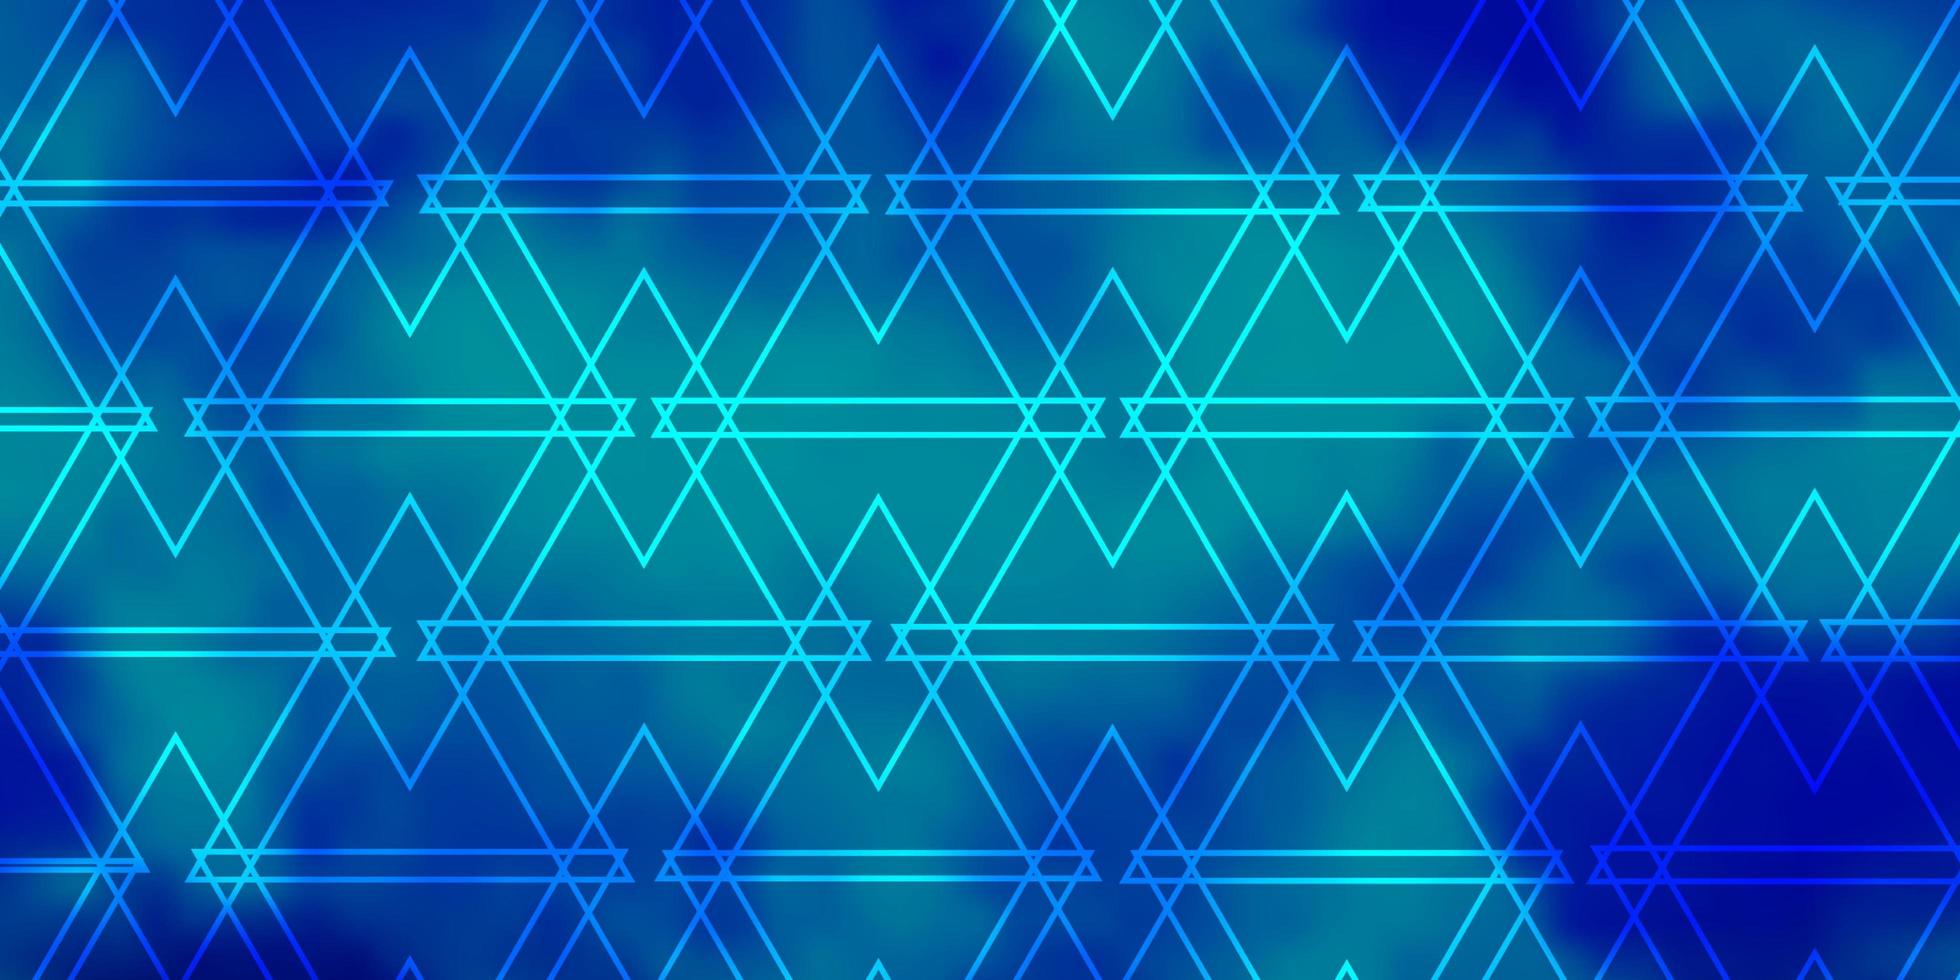 struttura di vettore blu chiaro con linee, triangoli.